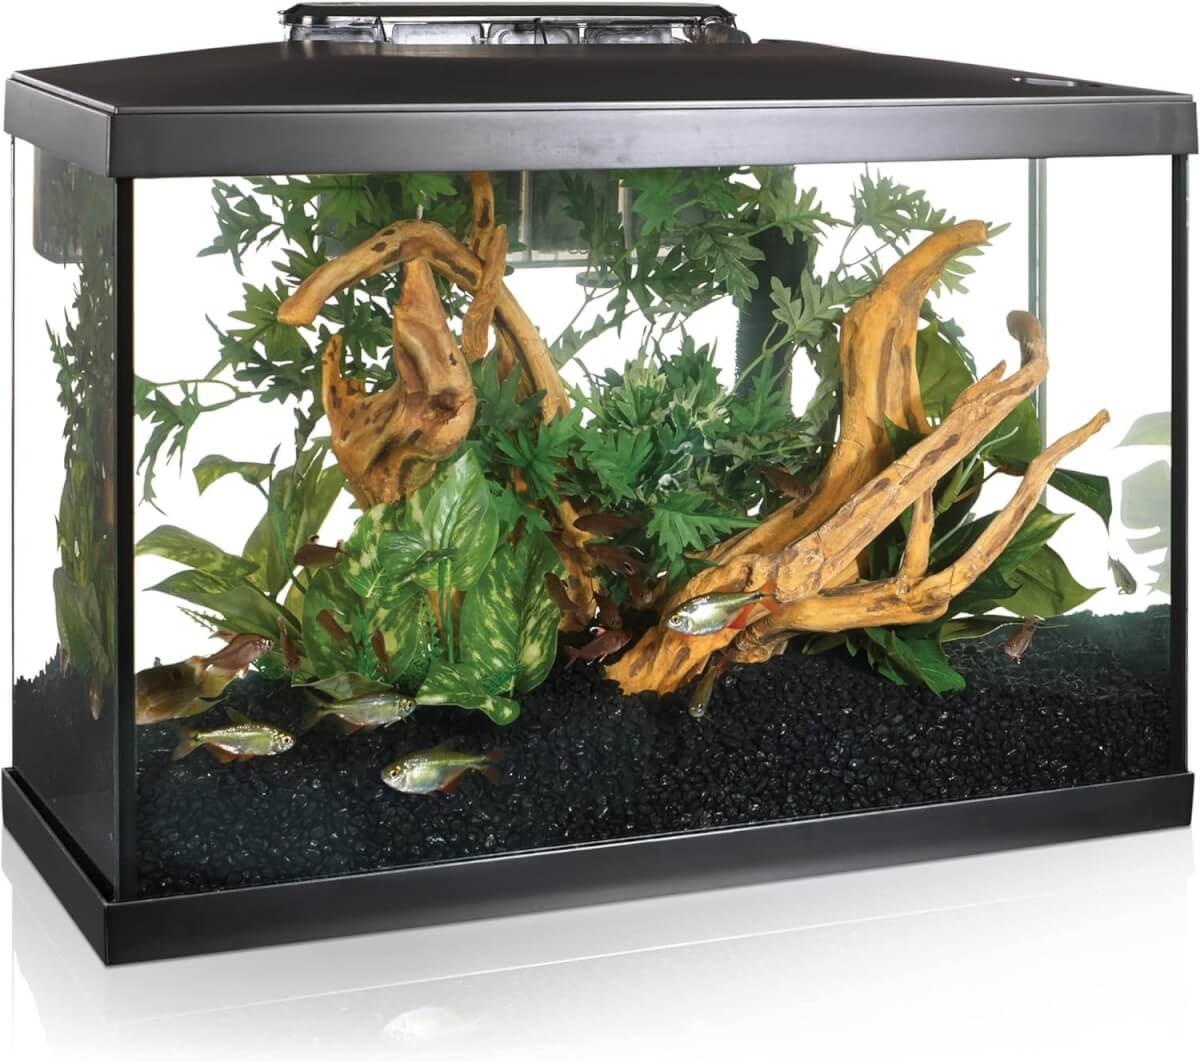 Marina 20G LED Aquarium Kit